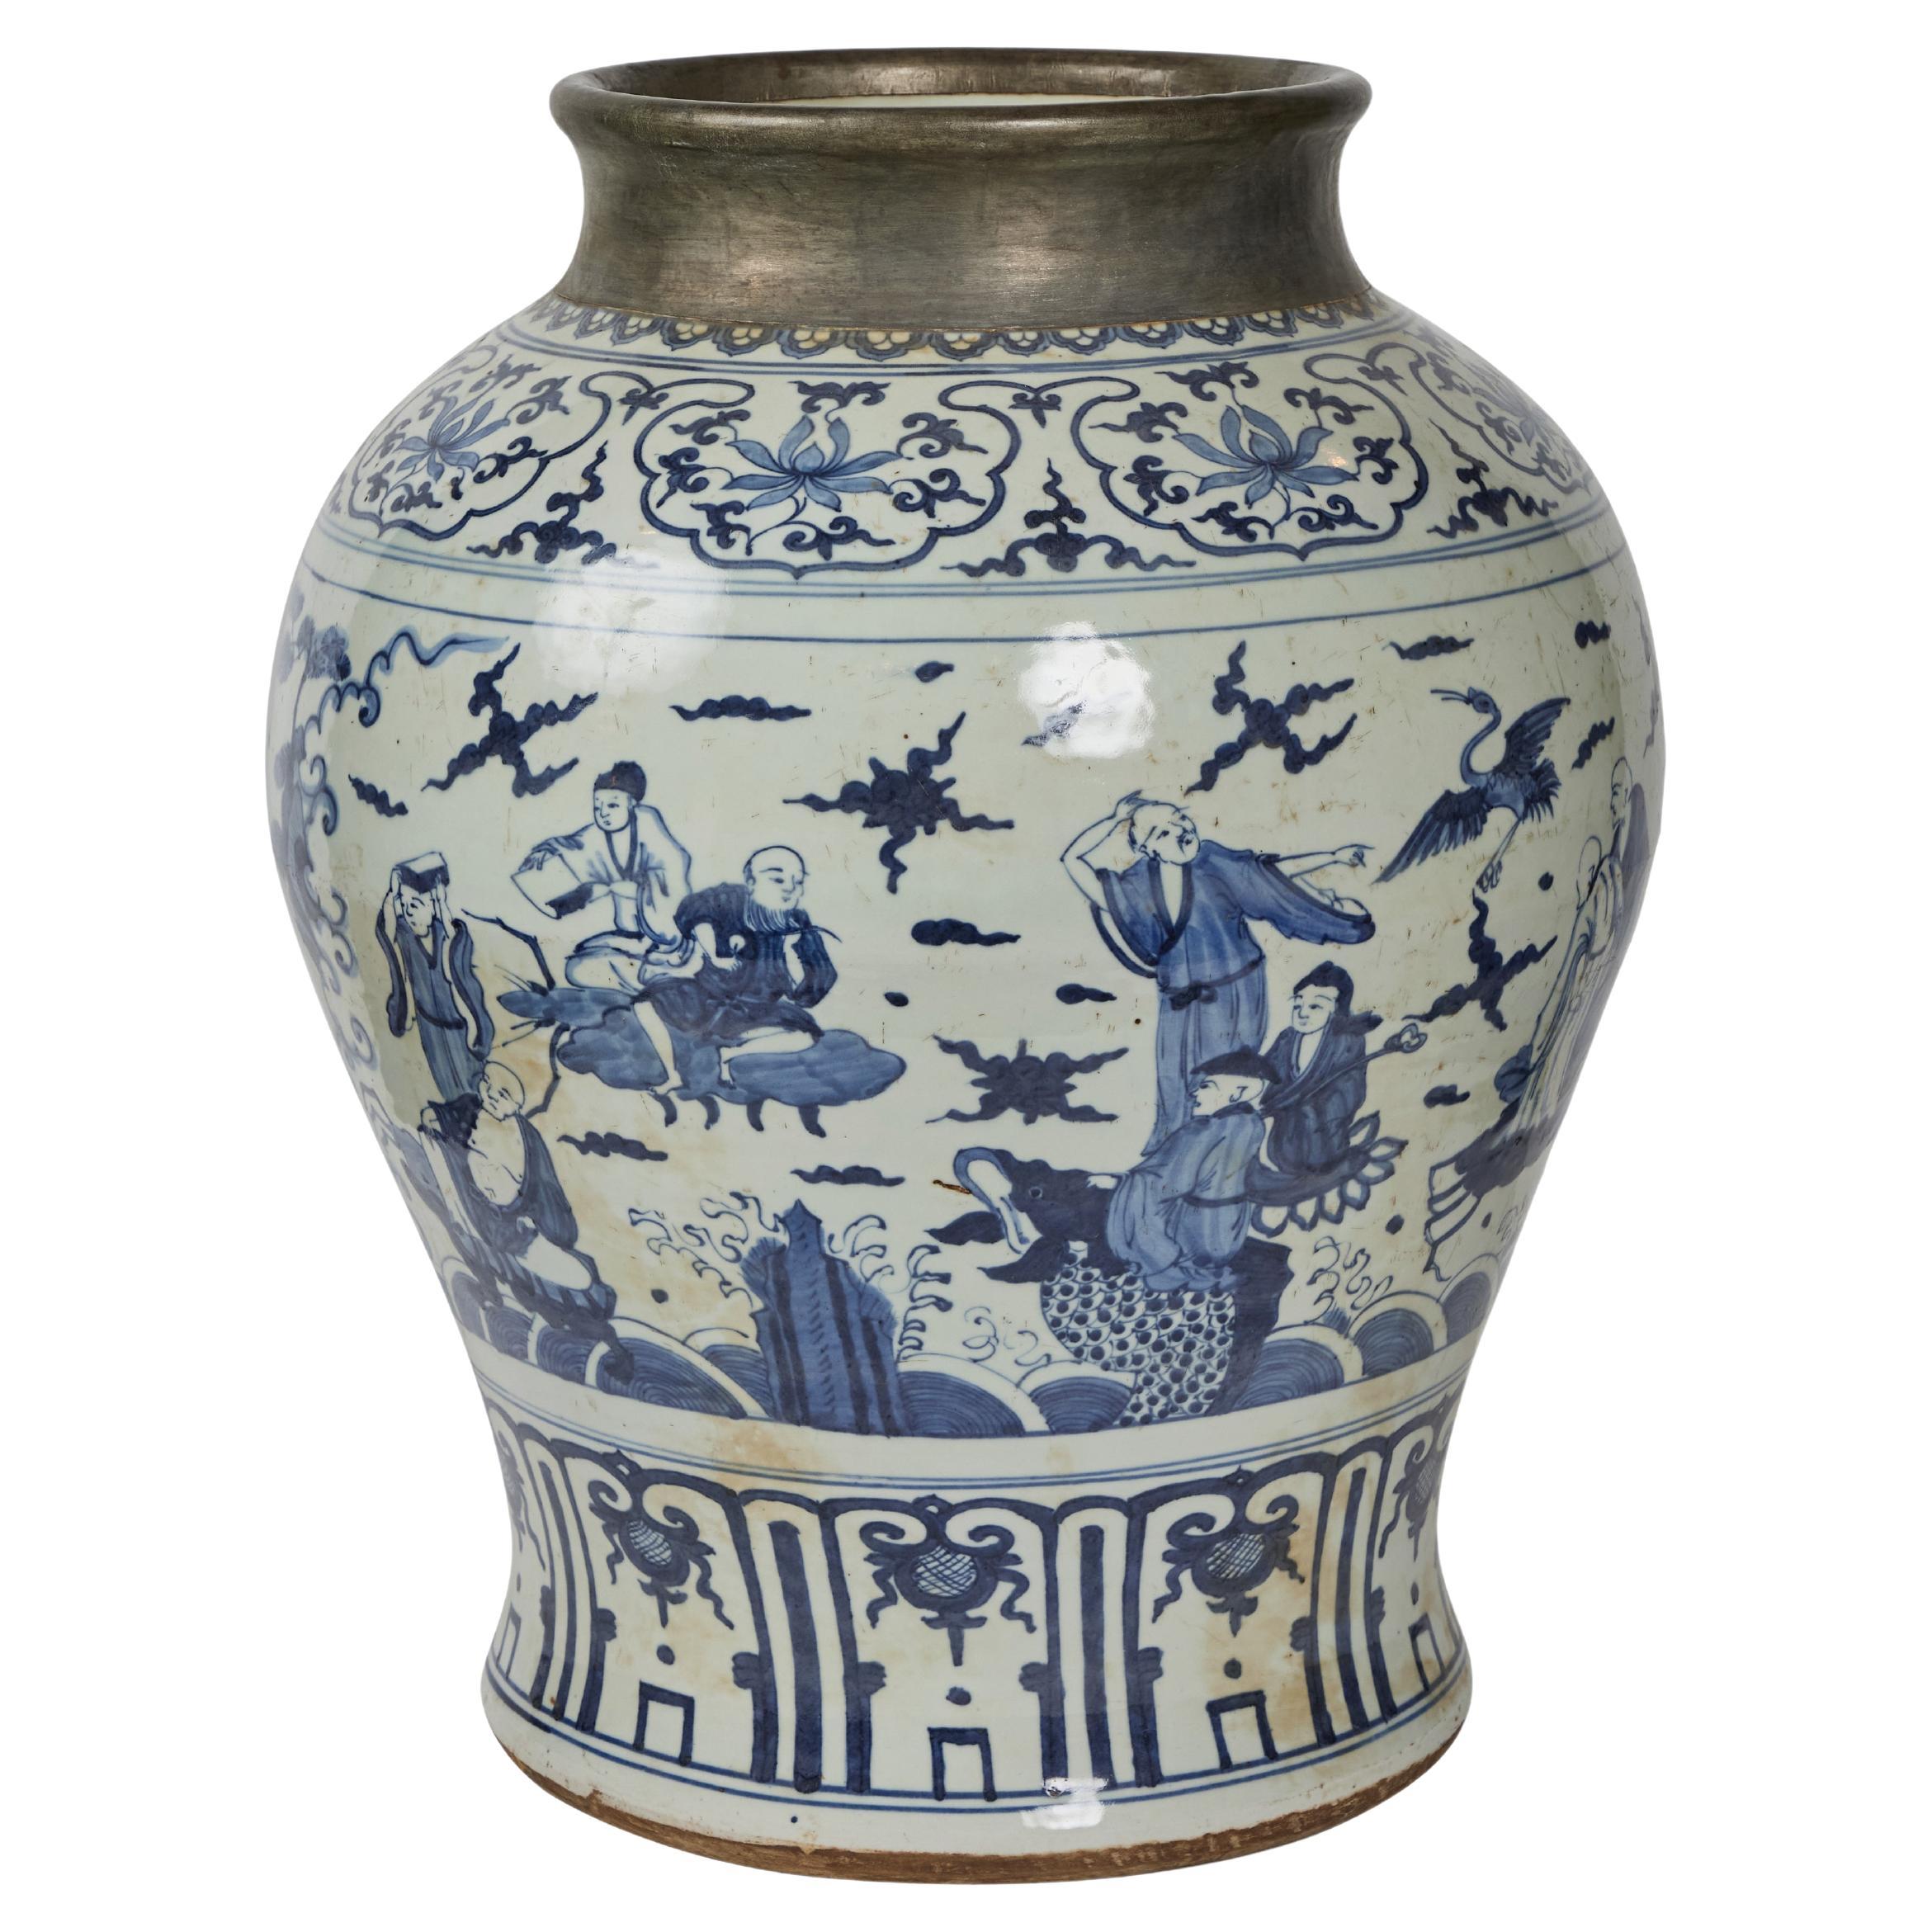 Jarre en porcelaine de style Dynasty Yuan 